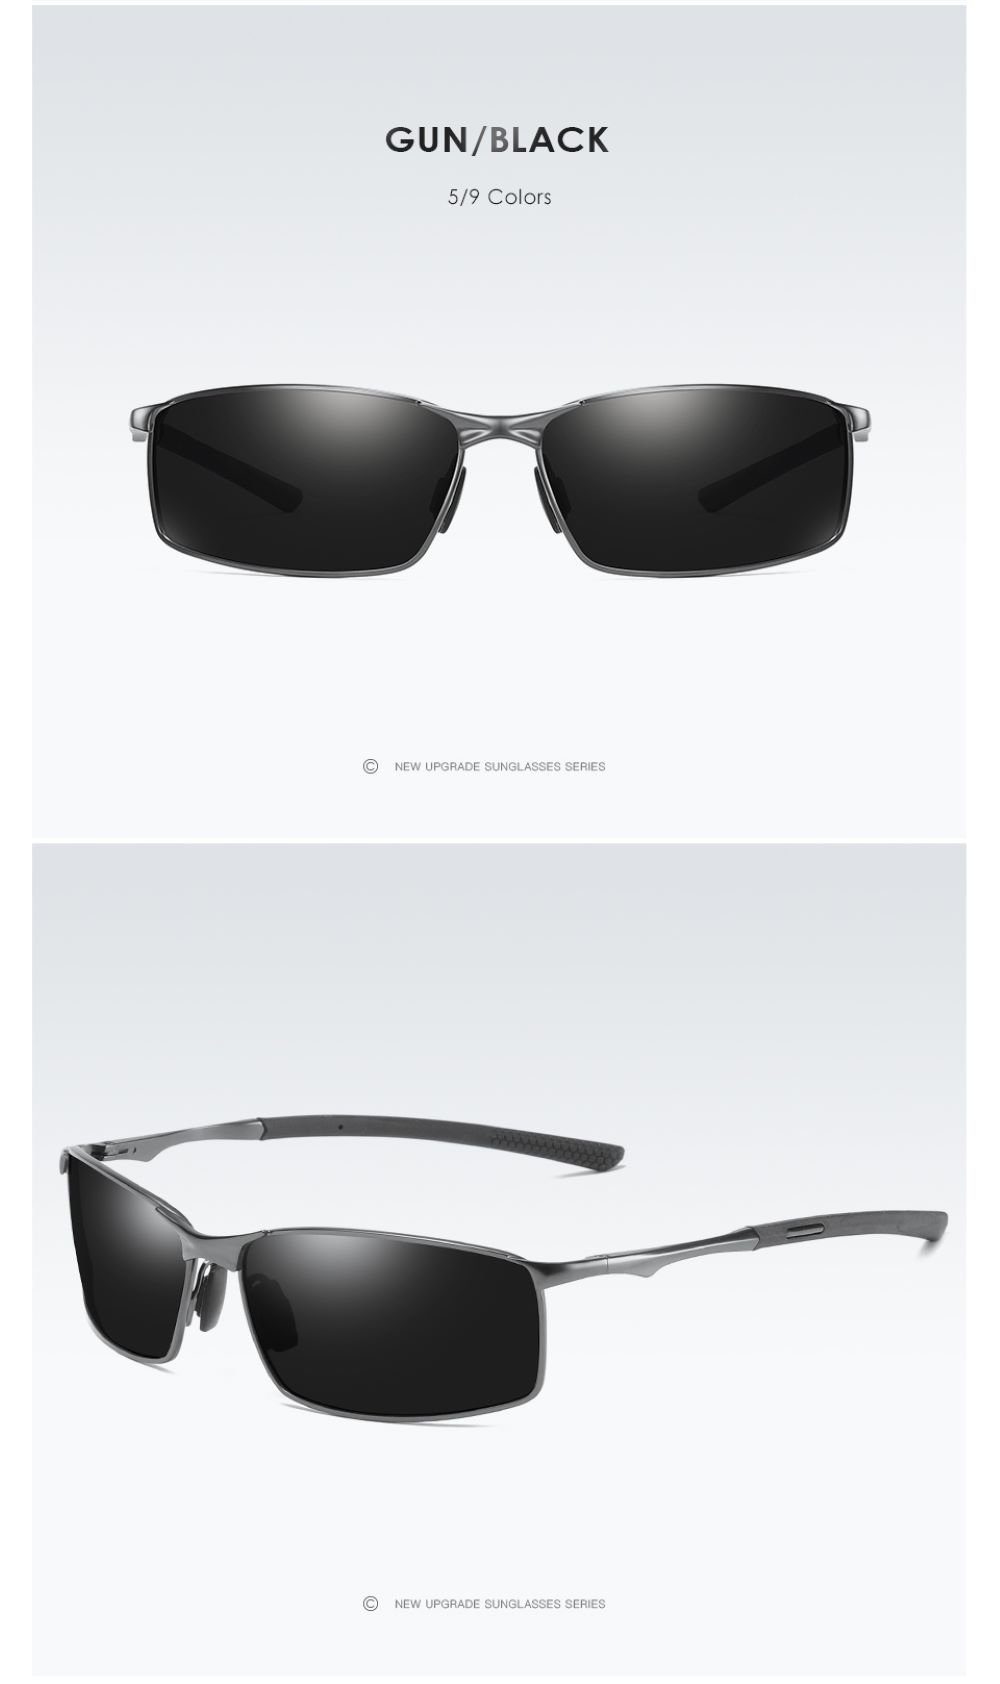 PACIEA Sonnenbrille Polarisierte Outdoor-Sport-Fahrer-Sonnenbrille für Männer